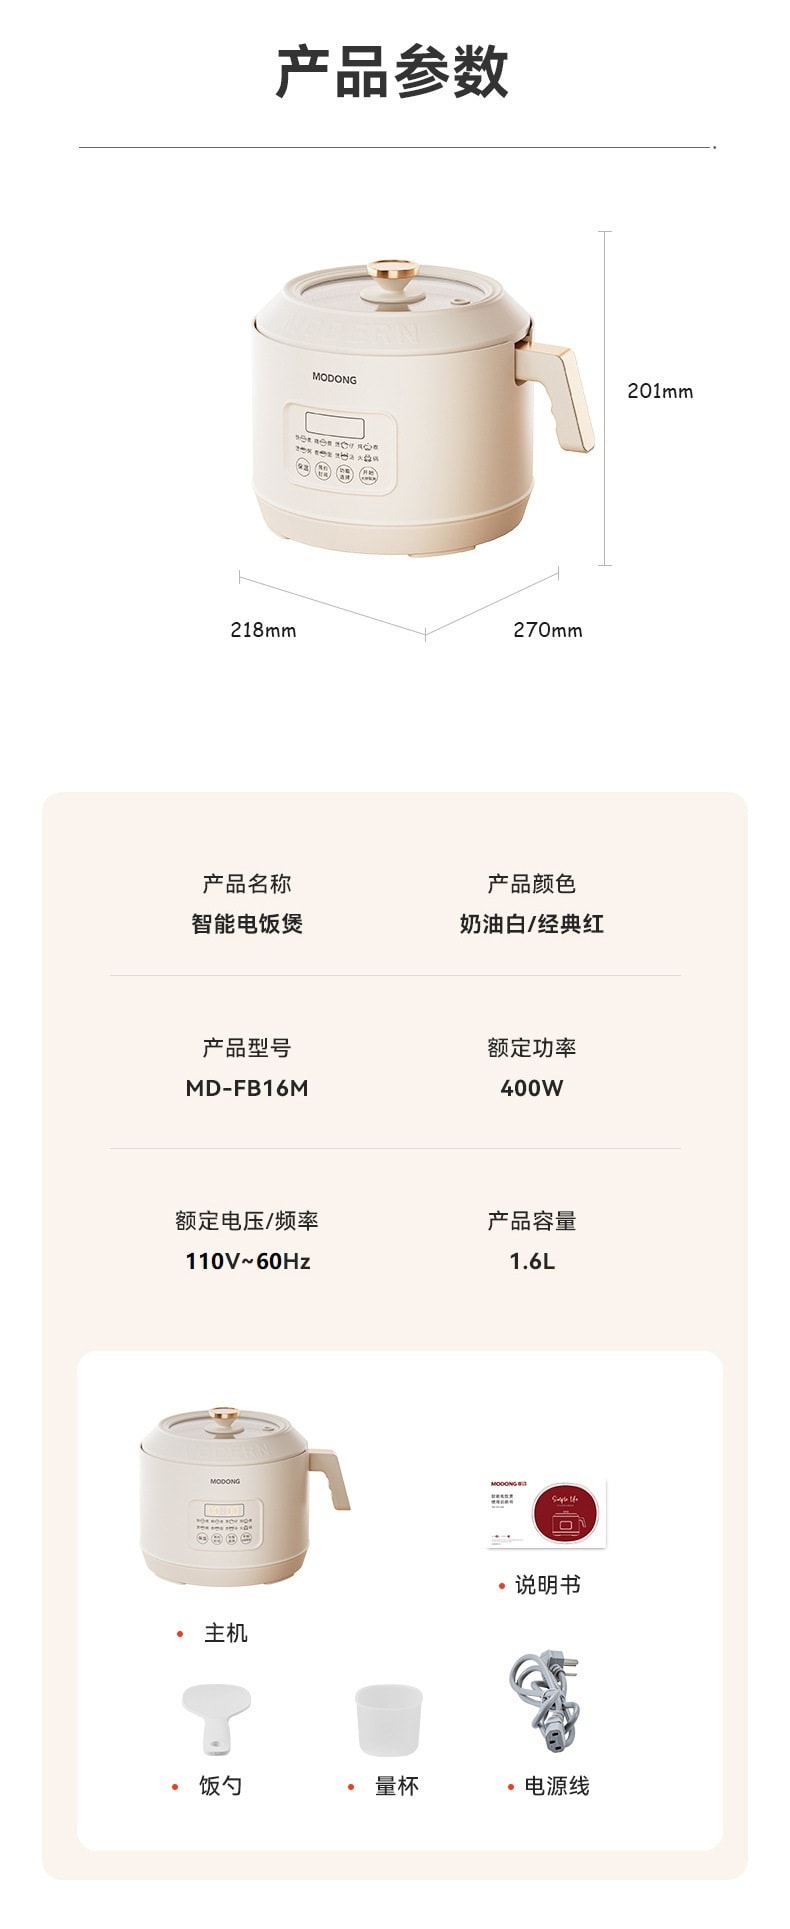 中國MODONG 多功能分離式智慧電鍋 迷你電燉鍋 1.6L容量 白色 1件入